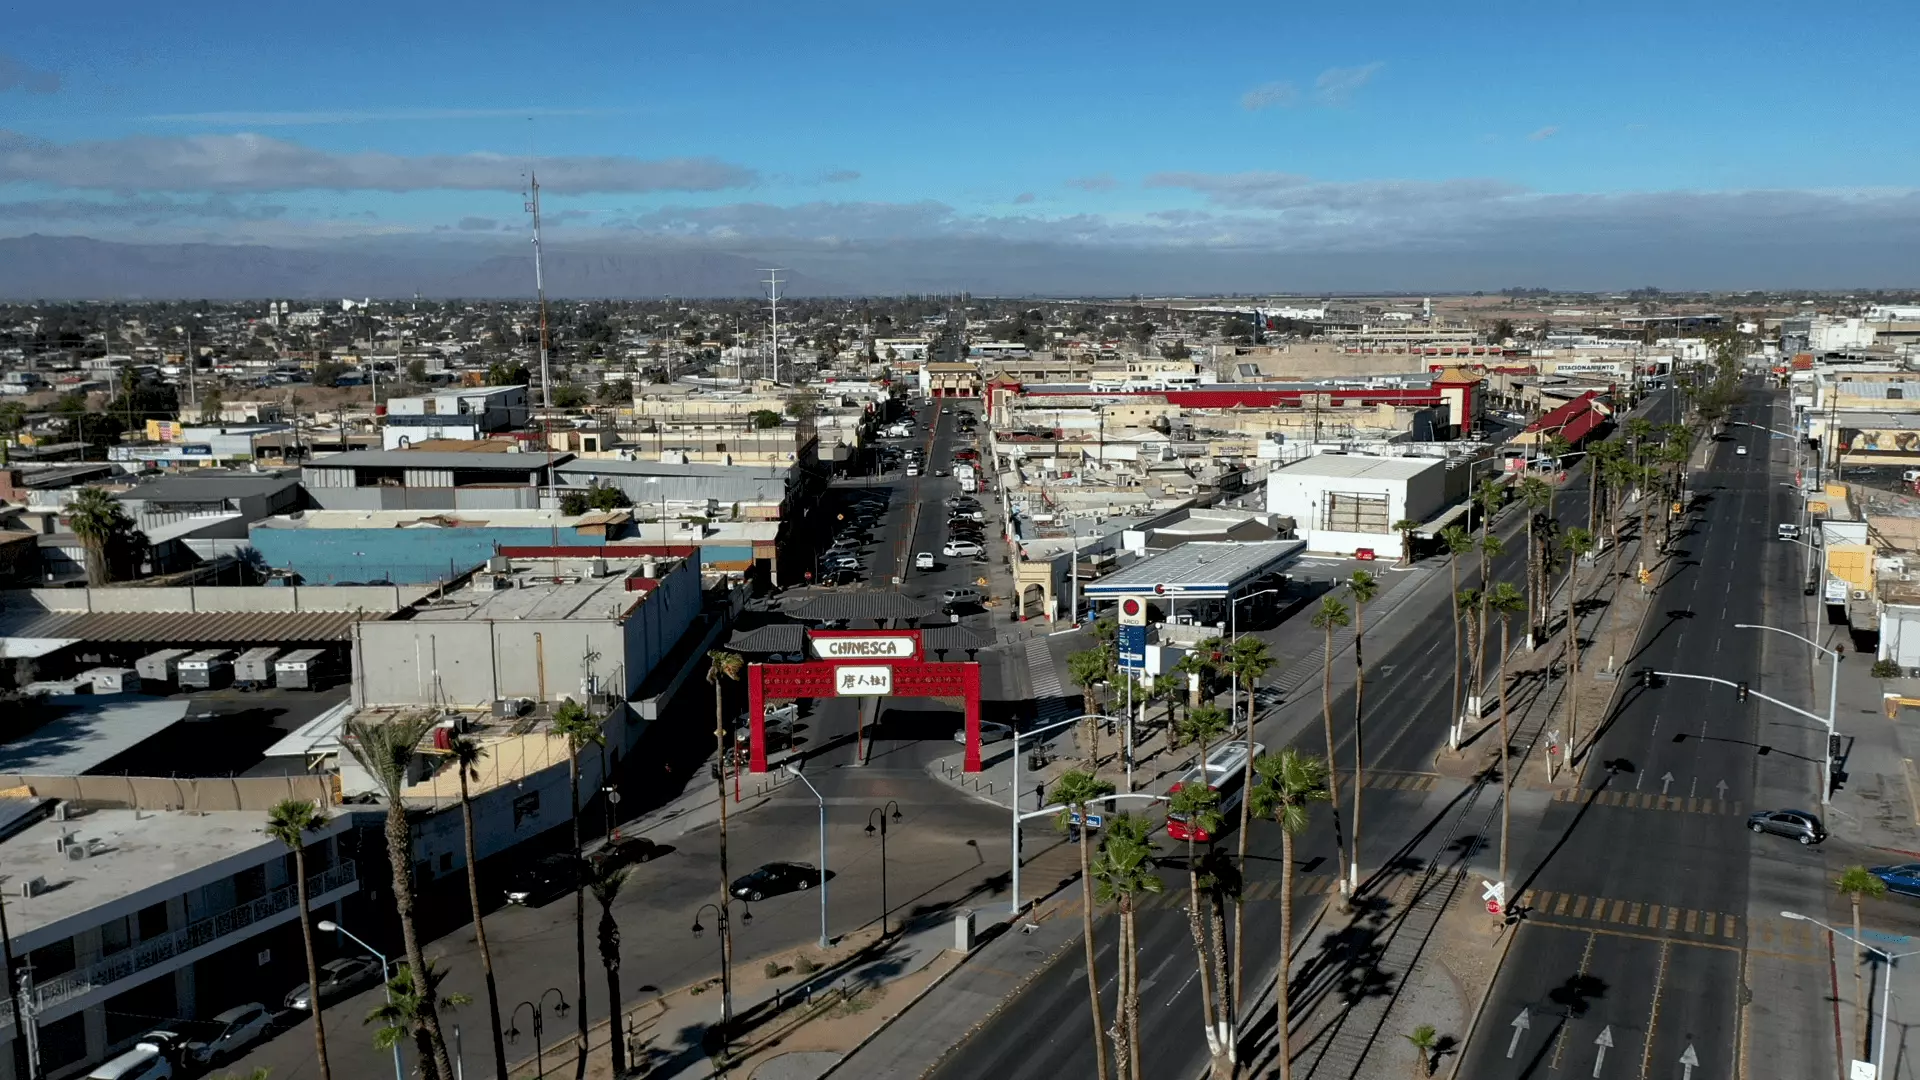 Vista aérea de la denominada “Chinesca”, sitió en el que está enclavada la comunidad china más importante de Baja California y de México.